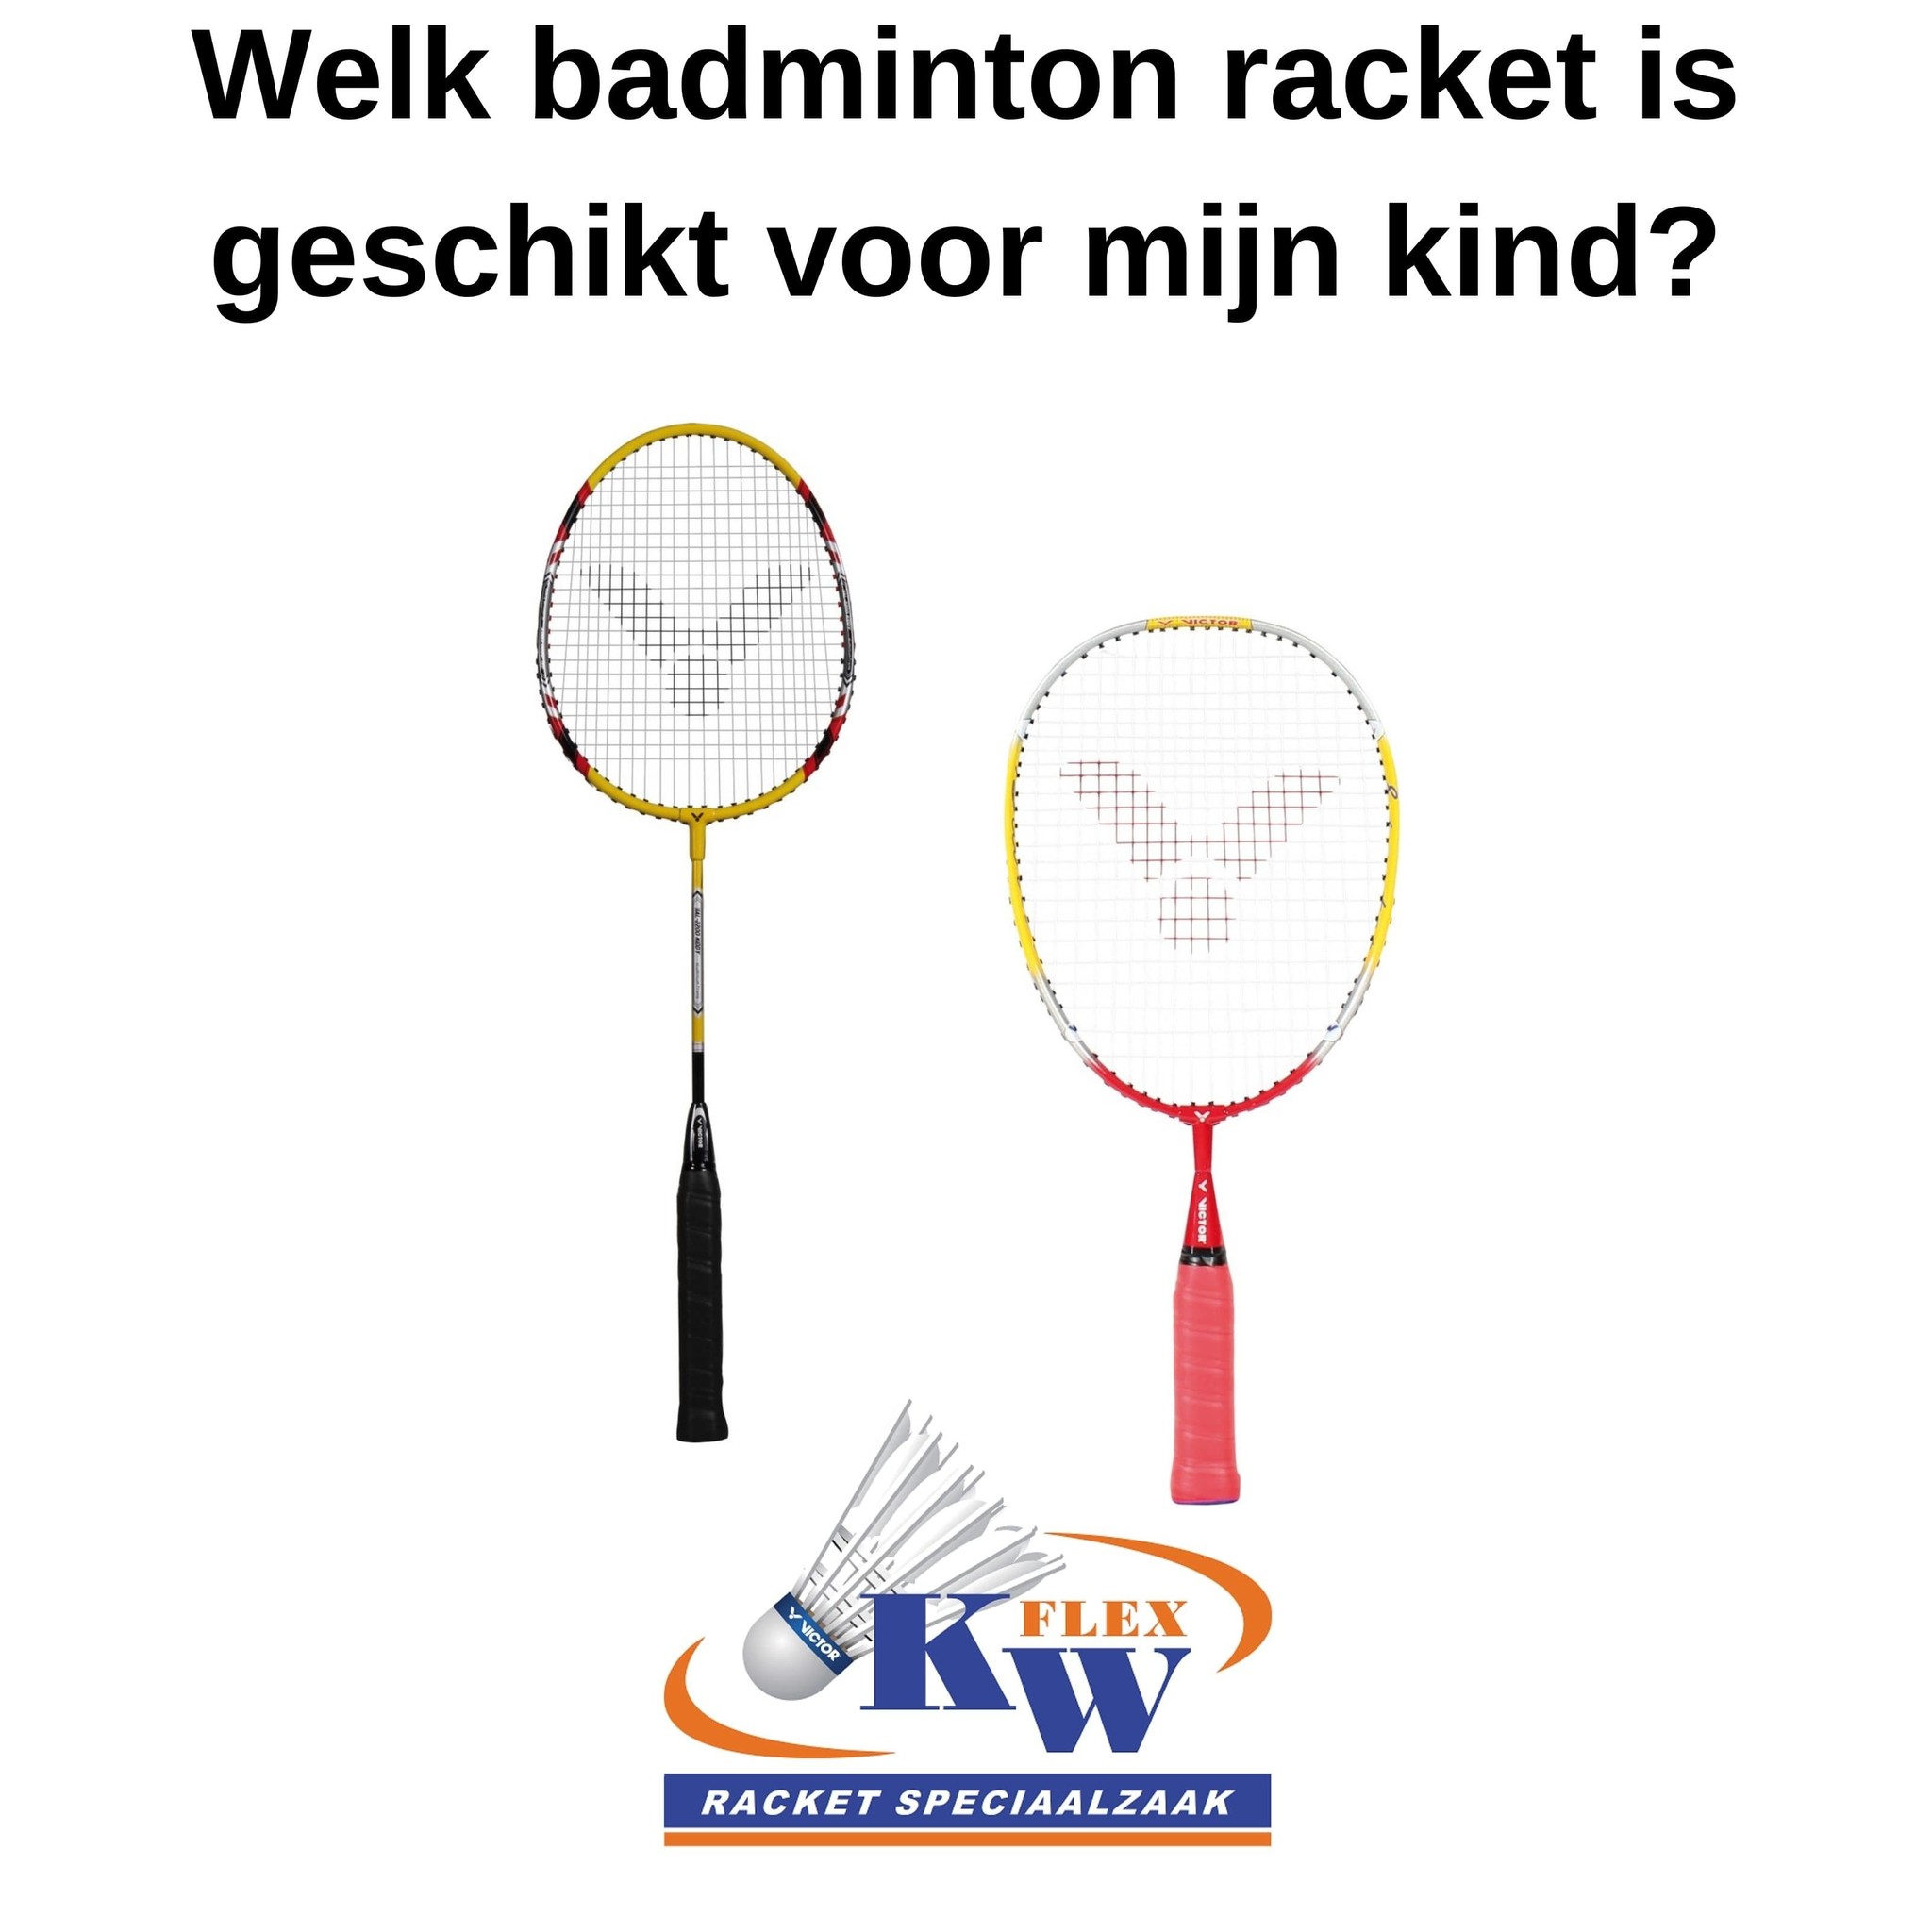 Welk badminton racket is geschikt kind? - KW FLEX racket